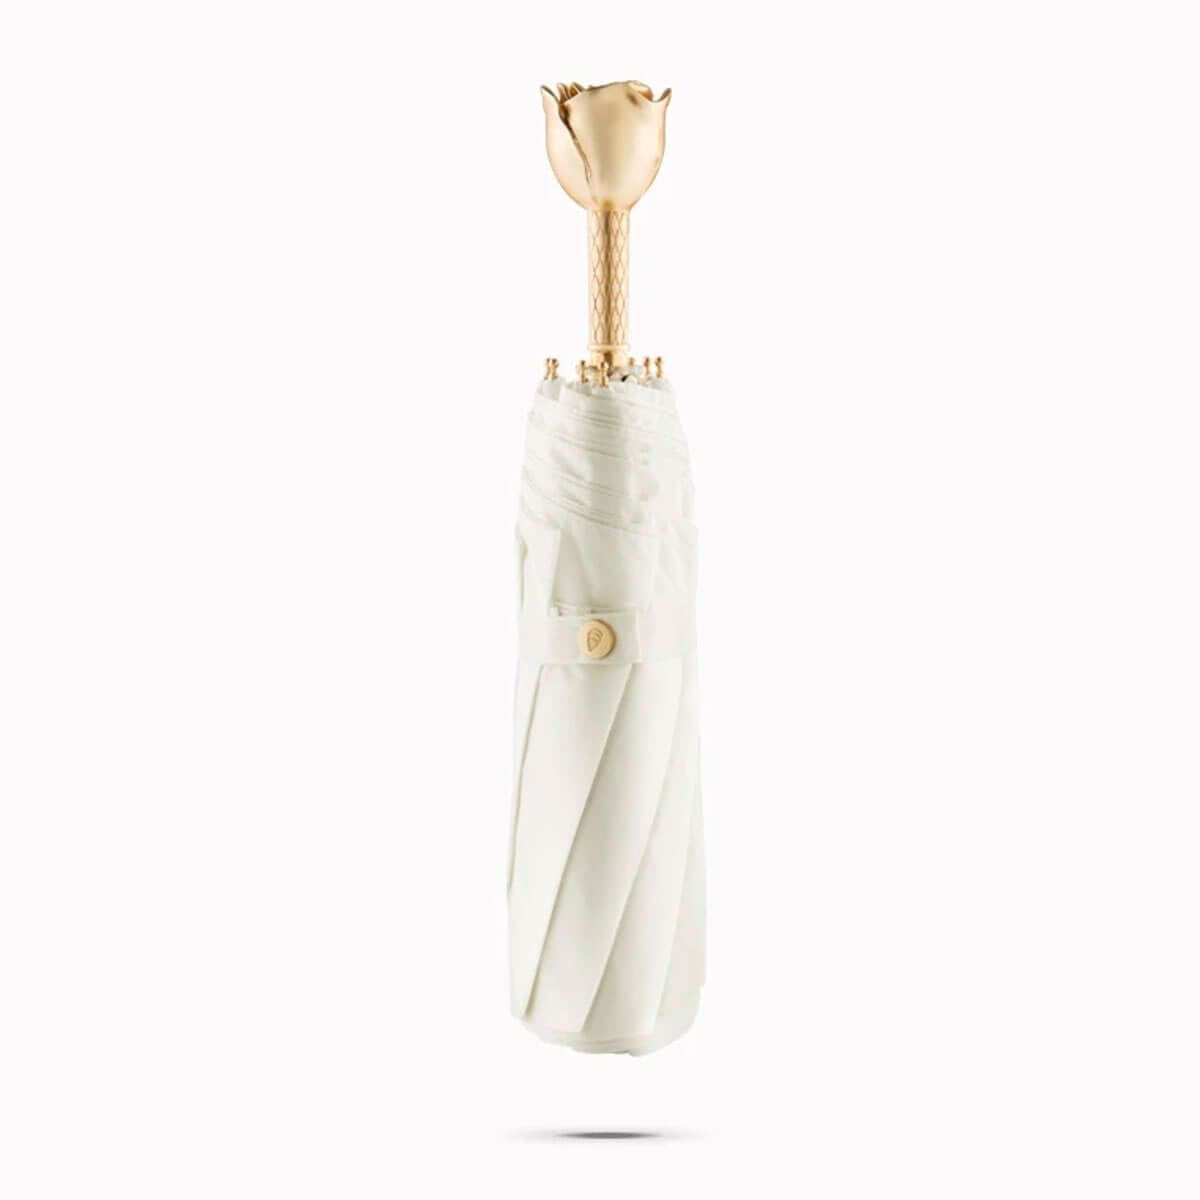 Golden Roses Luxury Folding Women Premium Umbrella